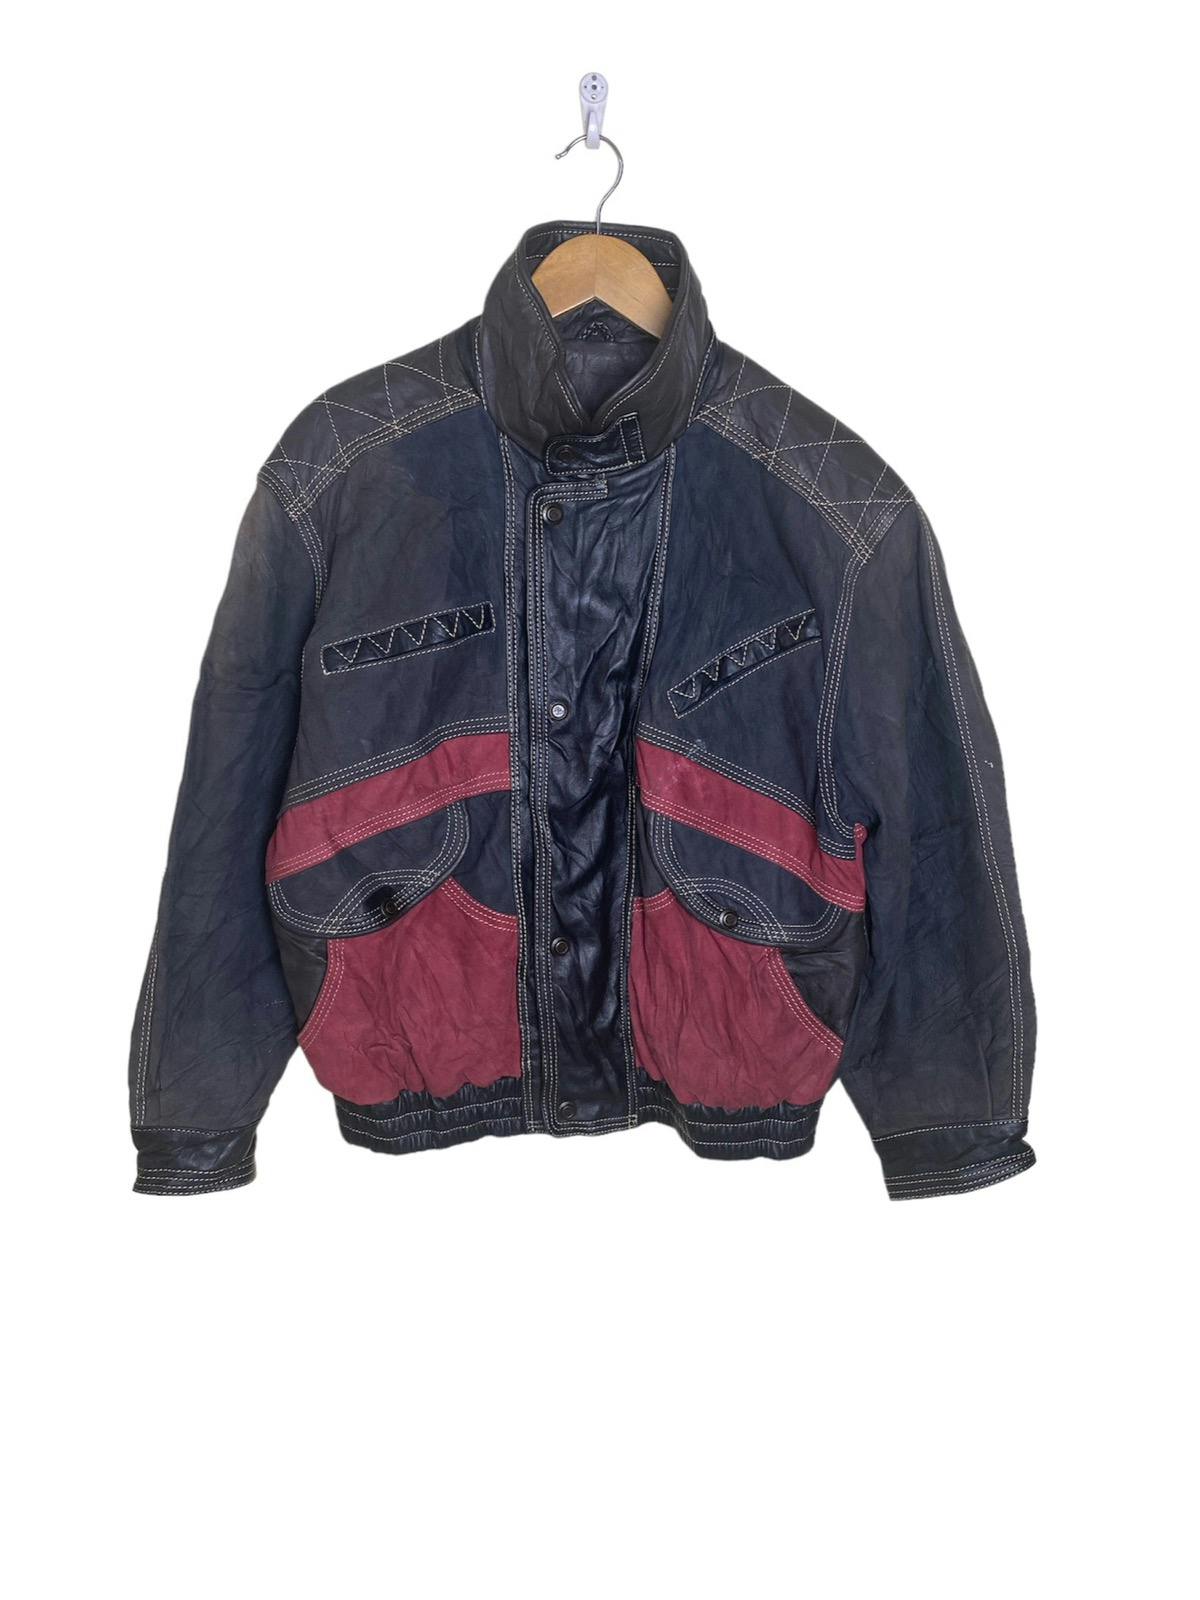 Pierre Balmain Paris Leather Jacket - 1